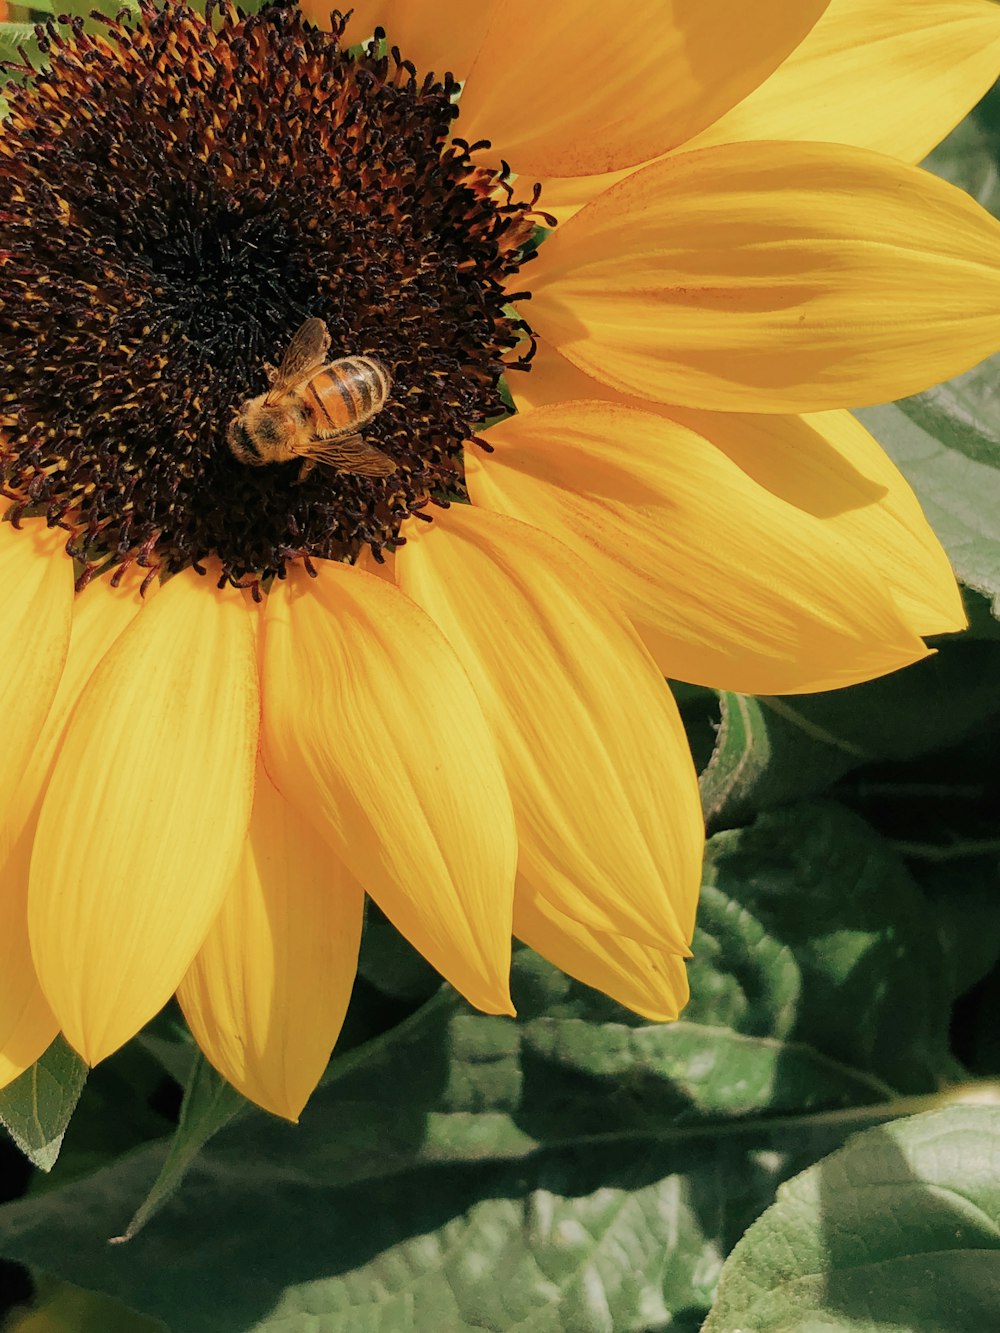 abeille perchée sur le tournesol jaune en photographie en gros plan